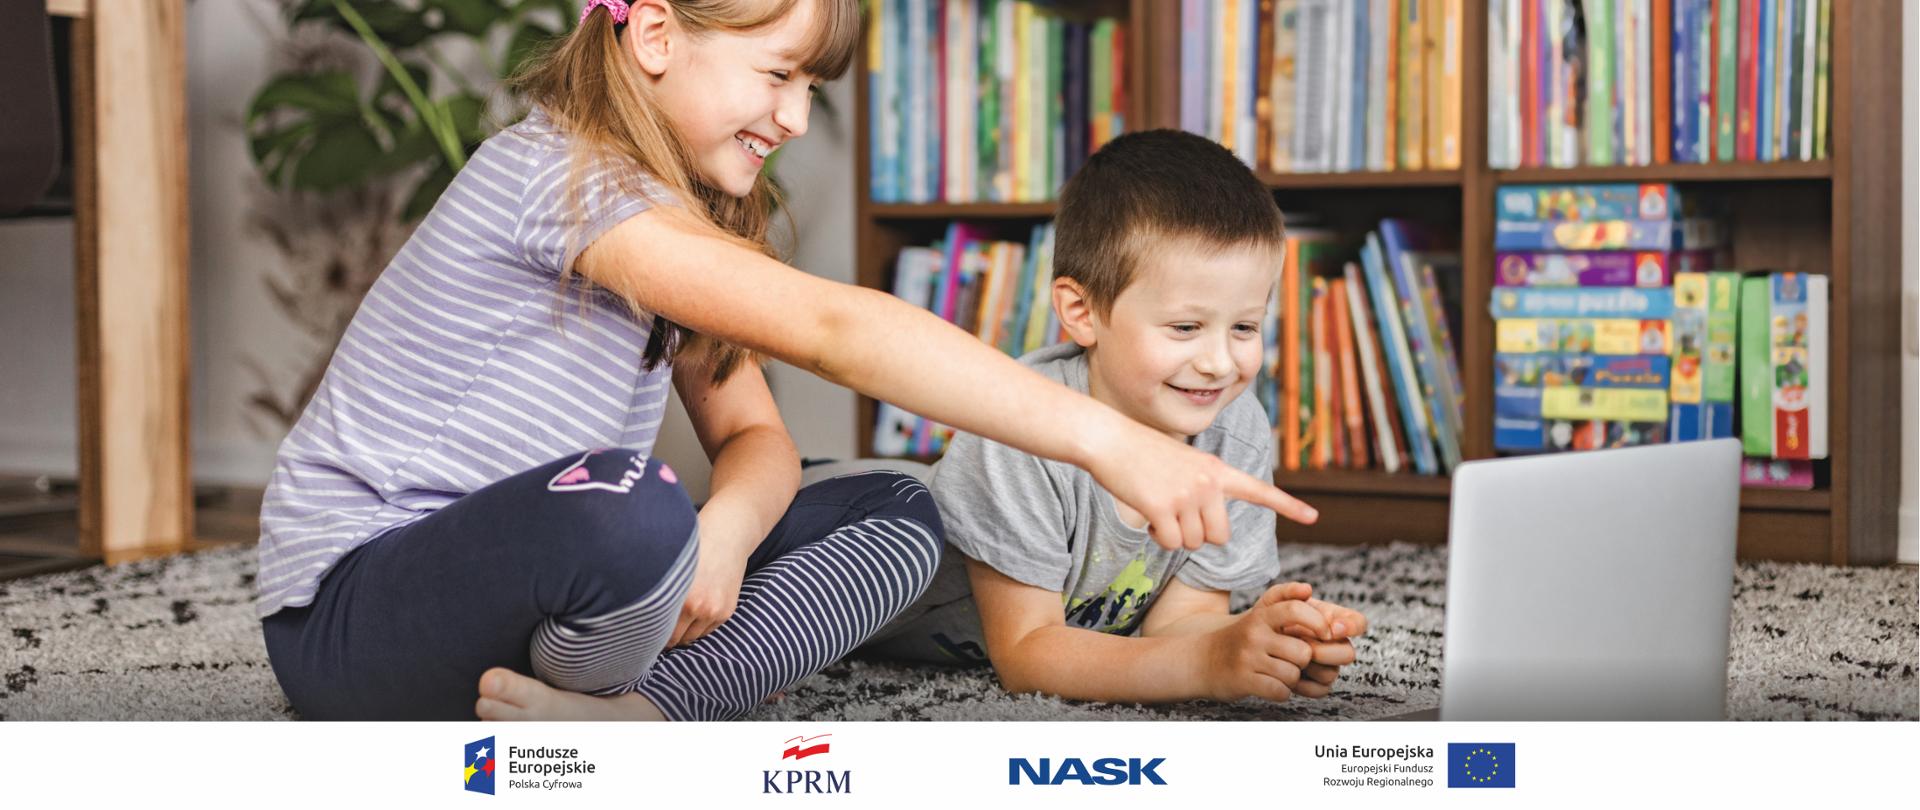 Na zdjęciu kilkuletnie dzieci - dziewczynka i chłopiec siedzą na dywanie i spoglądają w leżącego obok laptopa. Są uśmiechnięci, w tle regał z kolorowymi książkami i grami. 